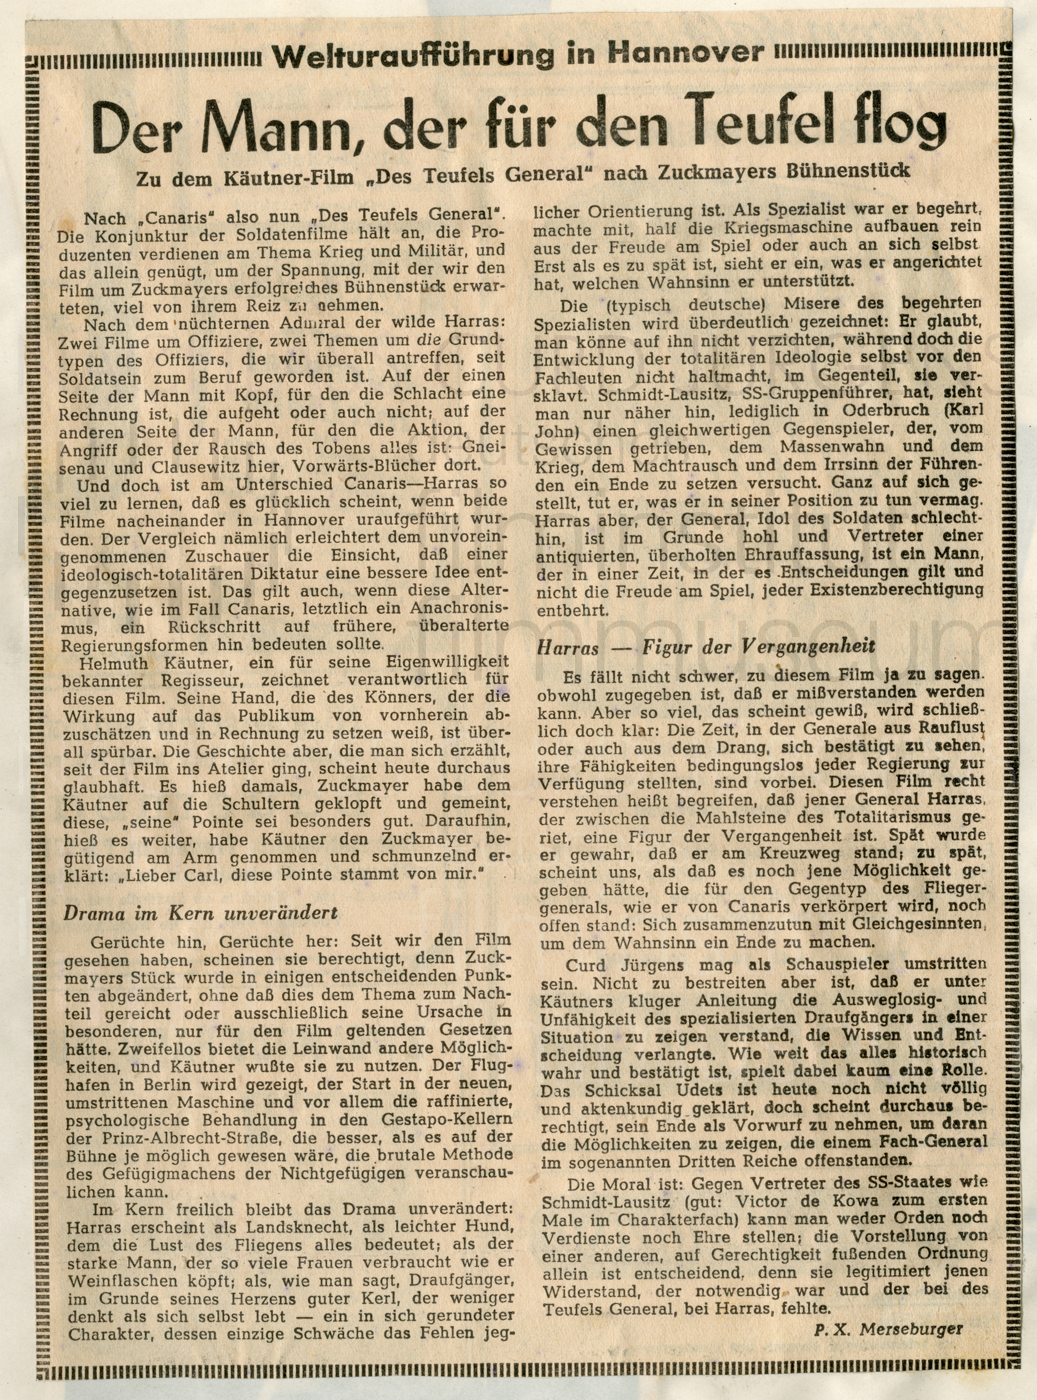 DES TEUFELS GENERAL (1955) Hannoversche Presse:"Der Mann, der für den Teufel flog", 24.2.1955